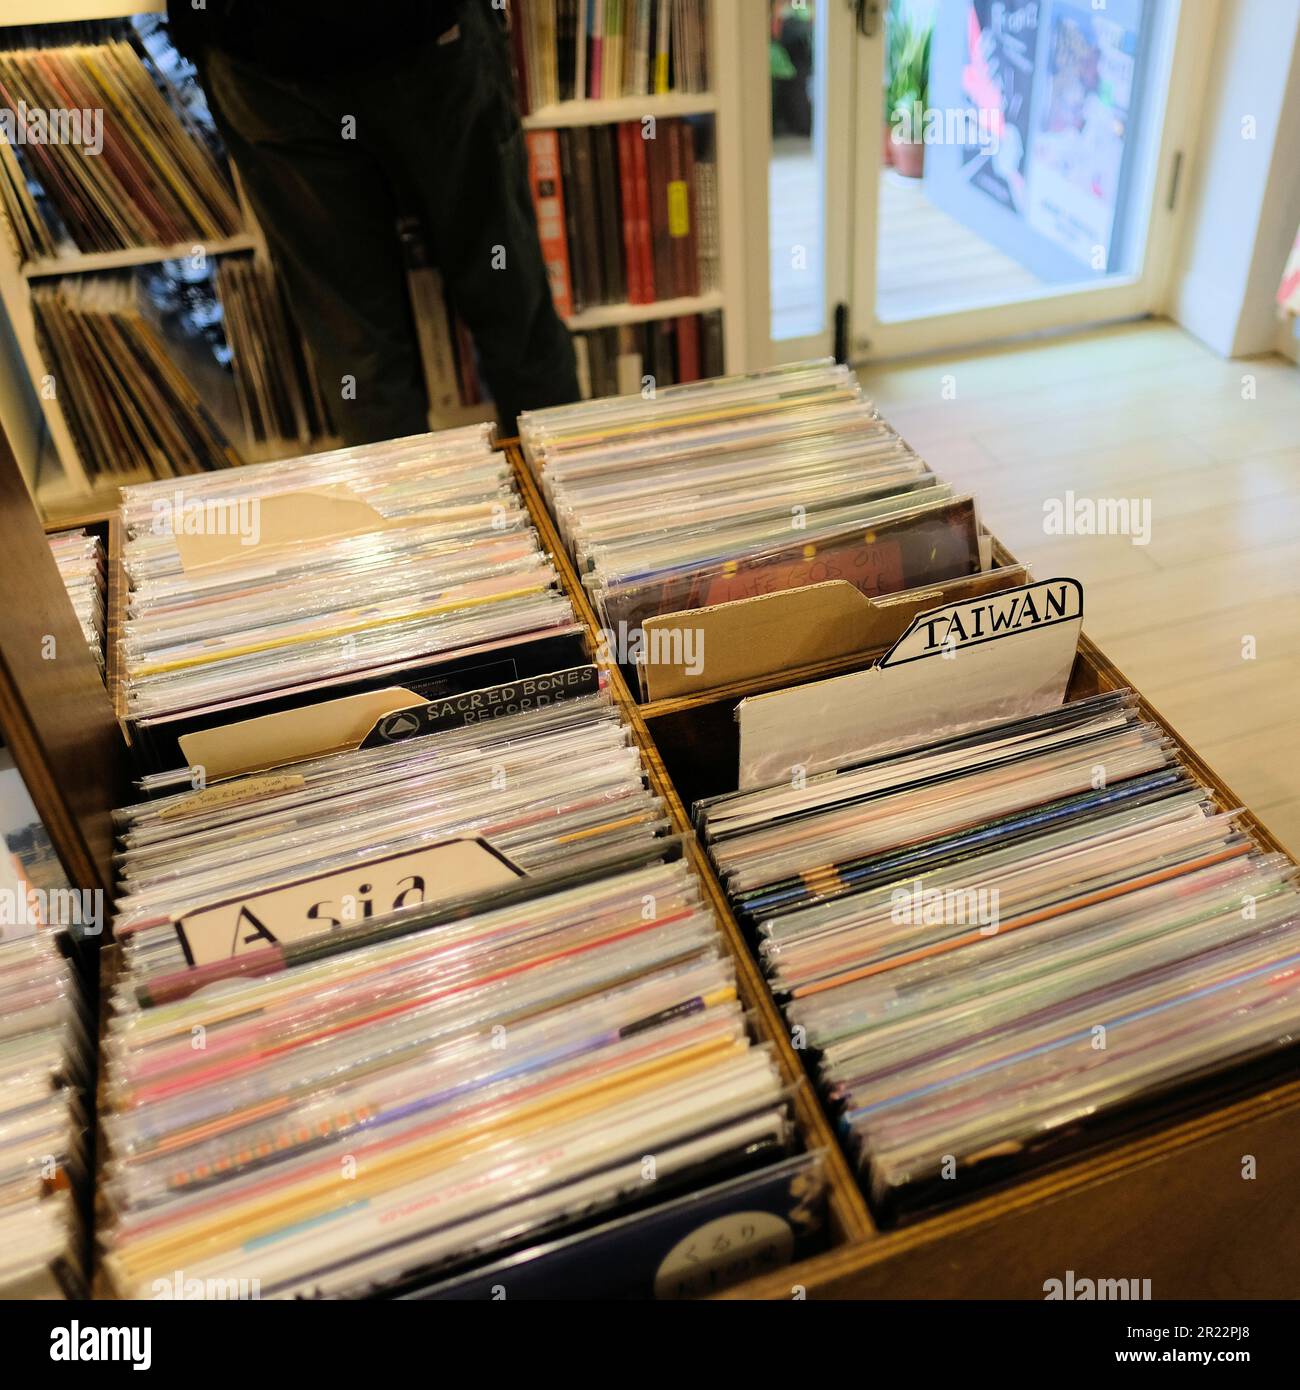 White Rabbit Records, un negozio indipendente che vende musica indie e alternativa su vinile e cd situato nel quartiere di da'an, Taipei, Taiwan. Foto Stock